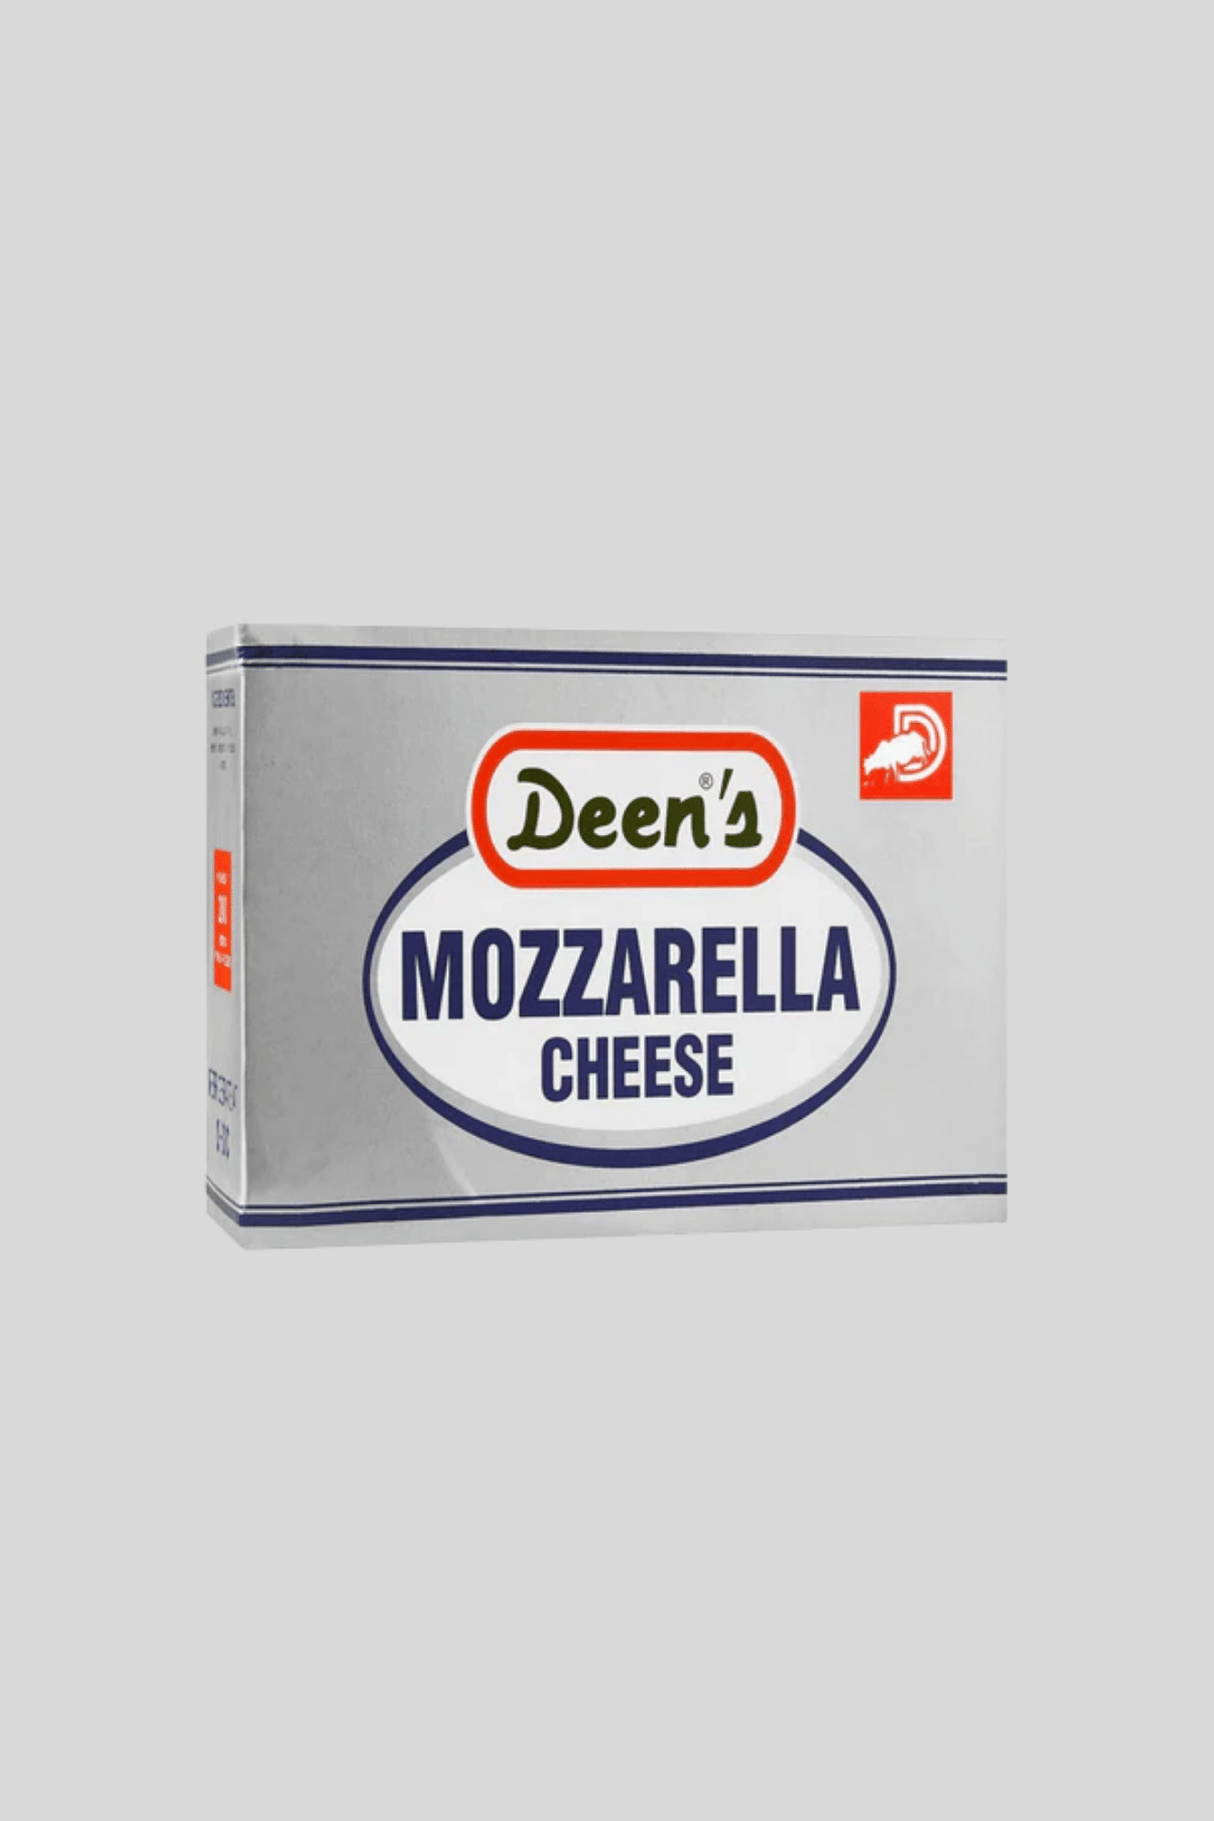 deens mozzarella cheese 200g